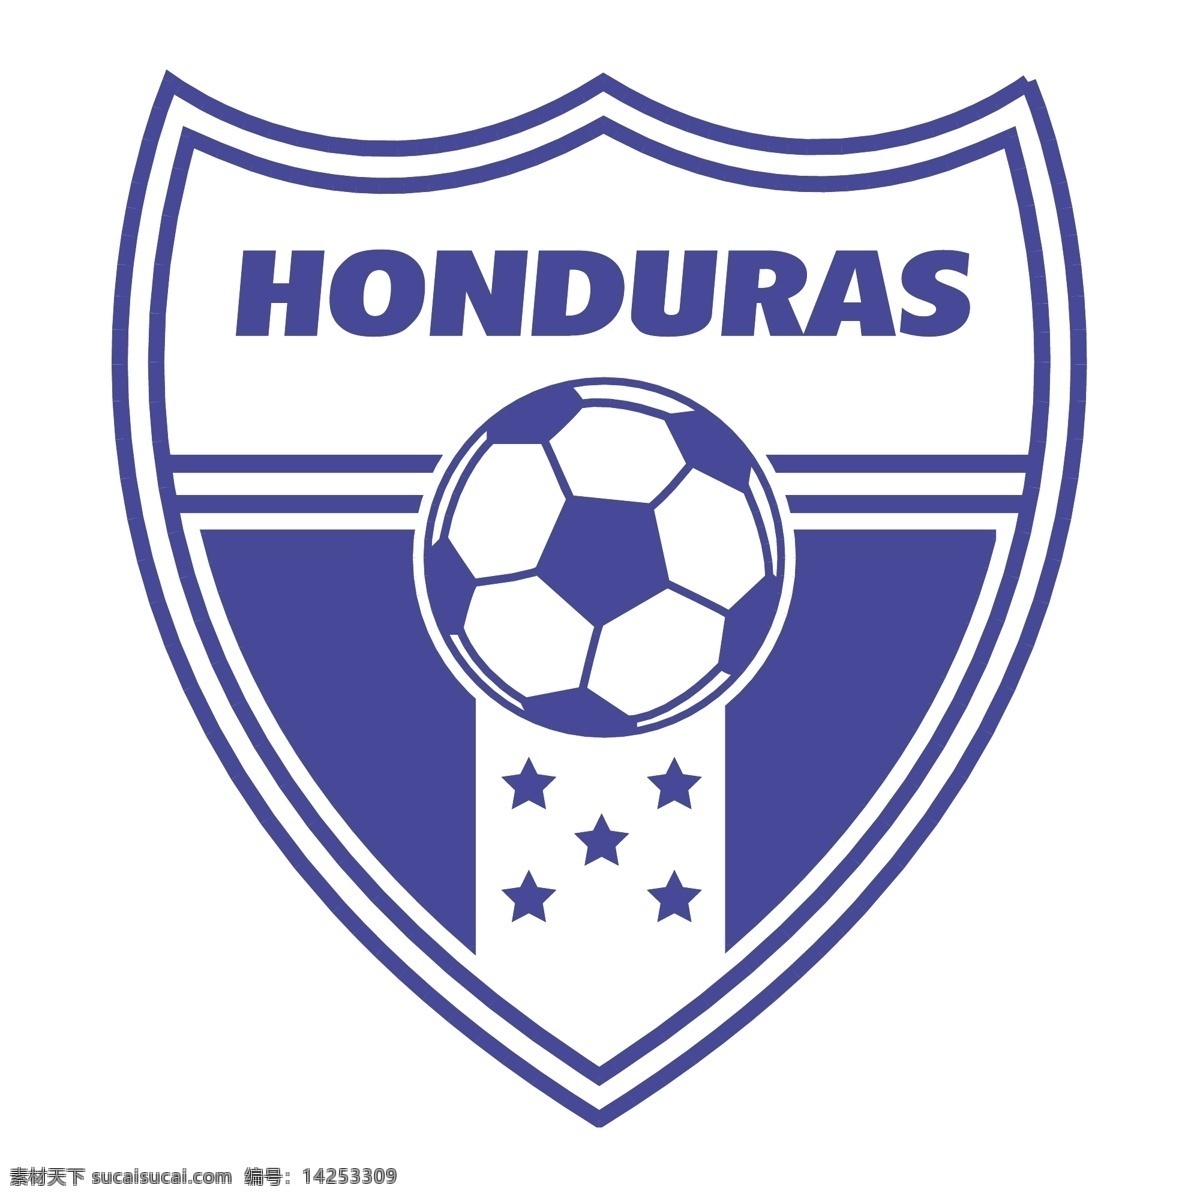 洪都拉斯 足球 协会 自由 标志 标识 psd源文件 logo设计